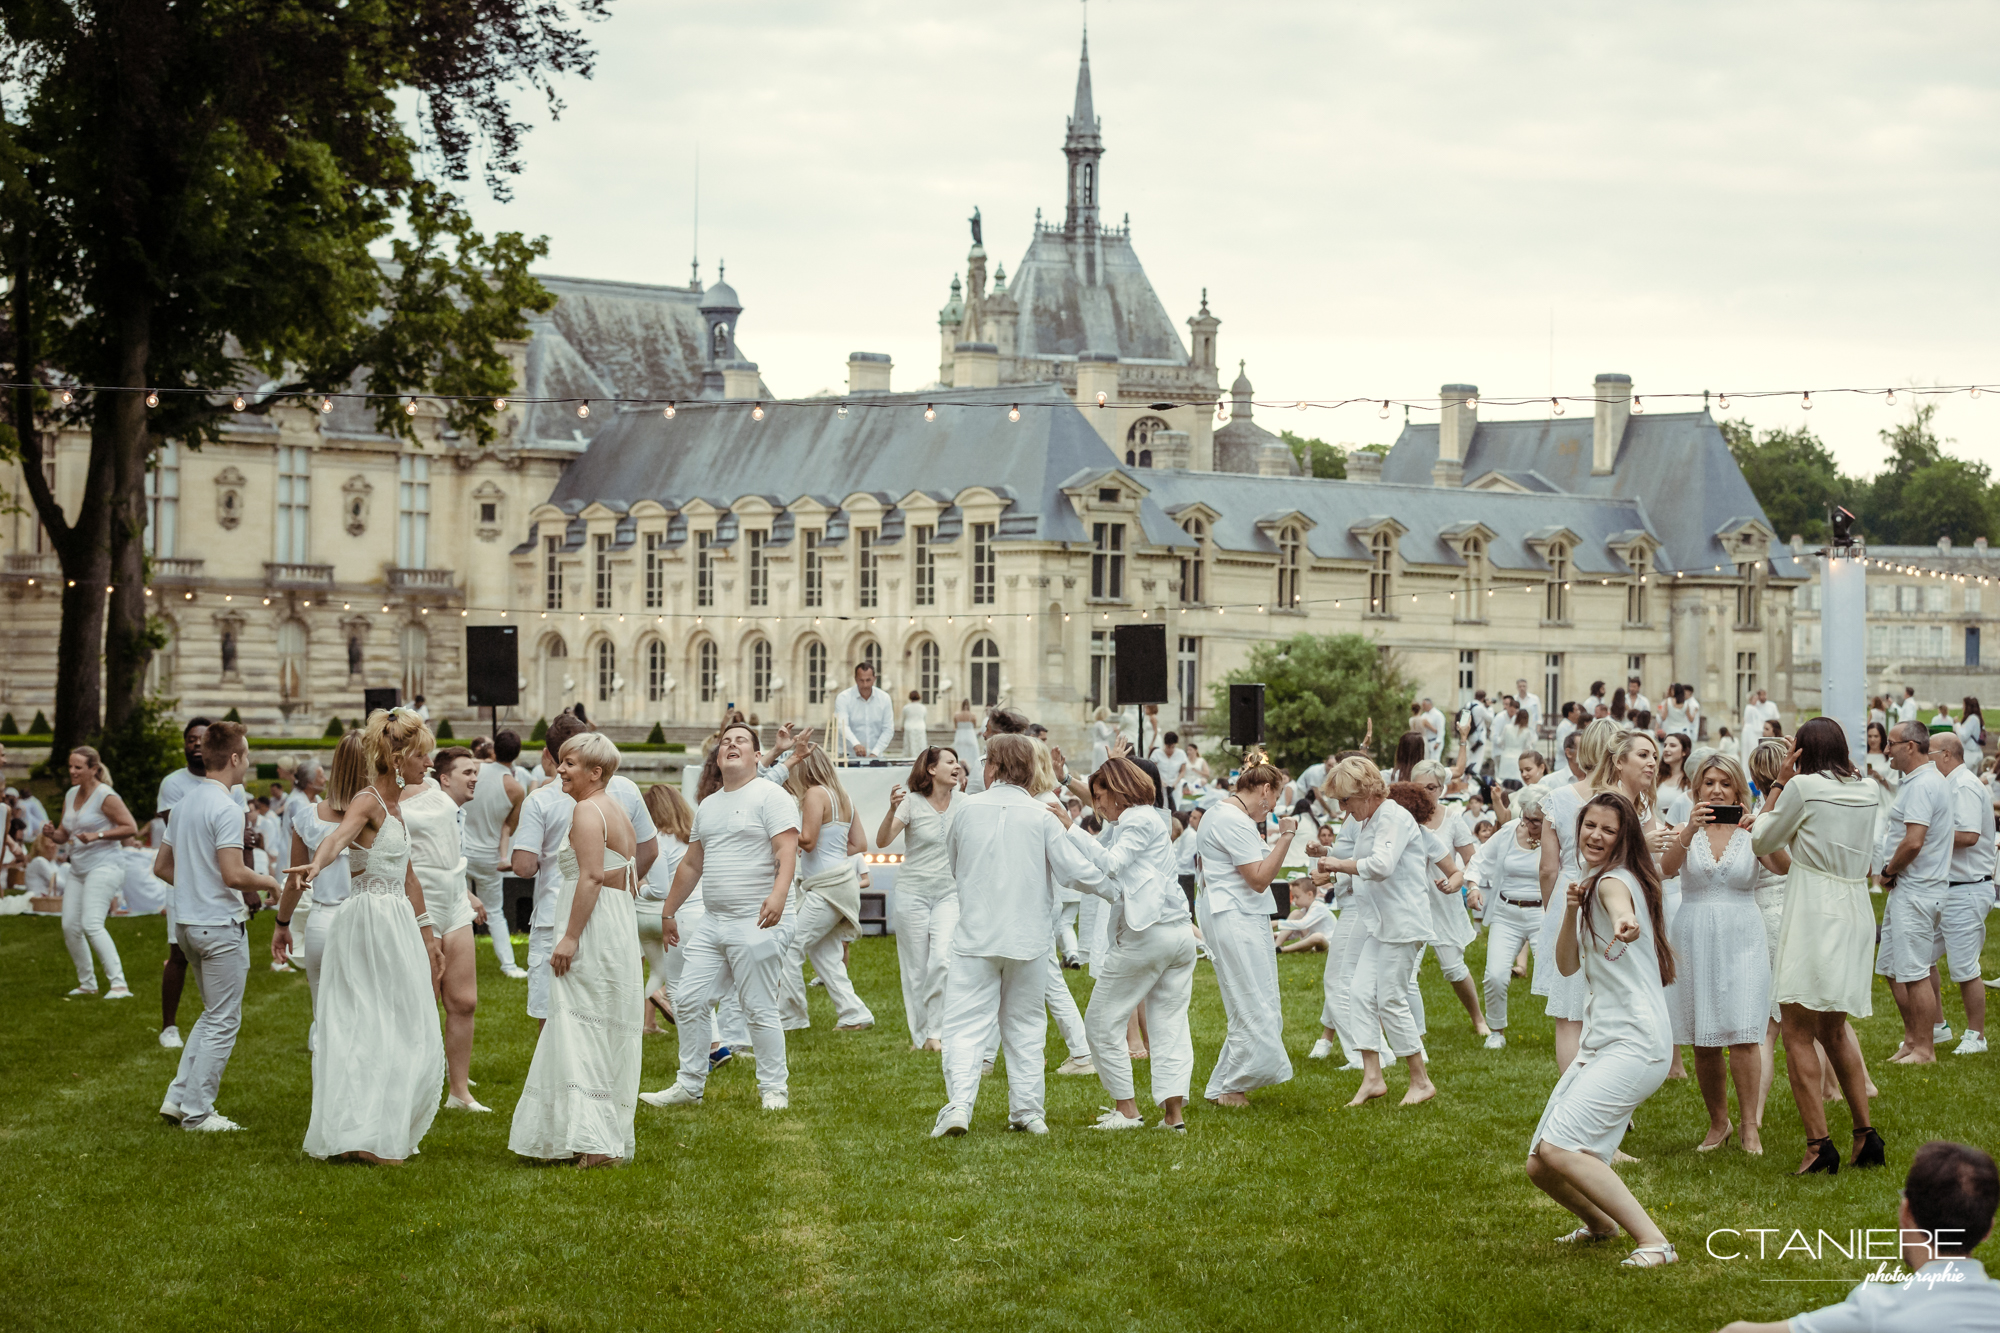 Des hommes, des femmes et des enfants habillés en blanc qui dansent sur l'herbe lors du pique en blanc organisé au château de Chantilly